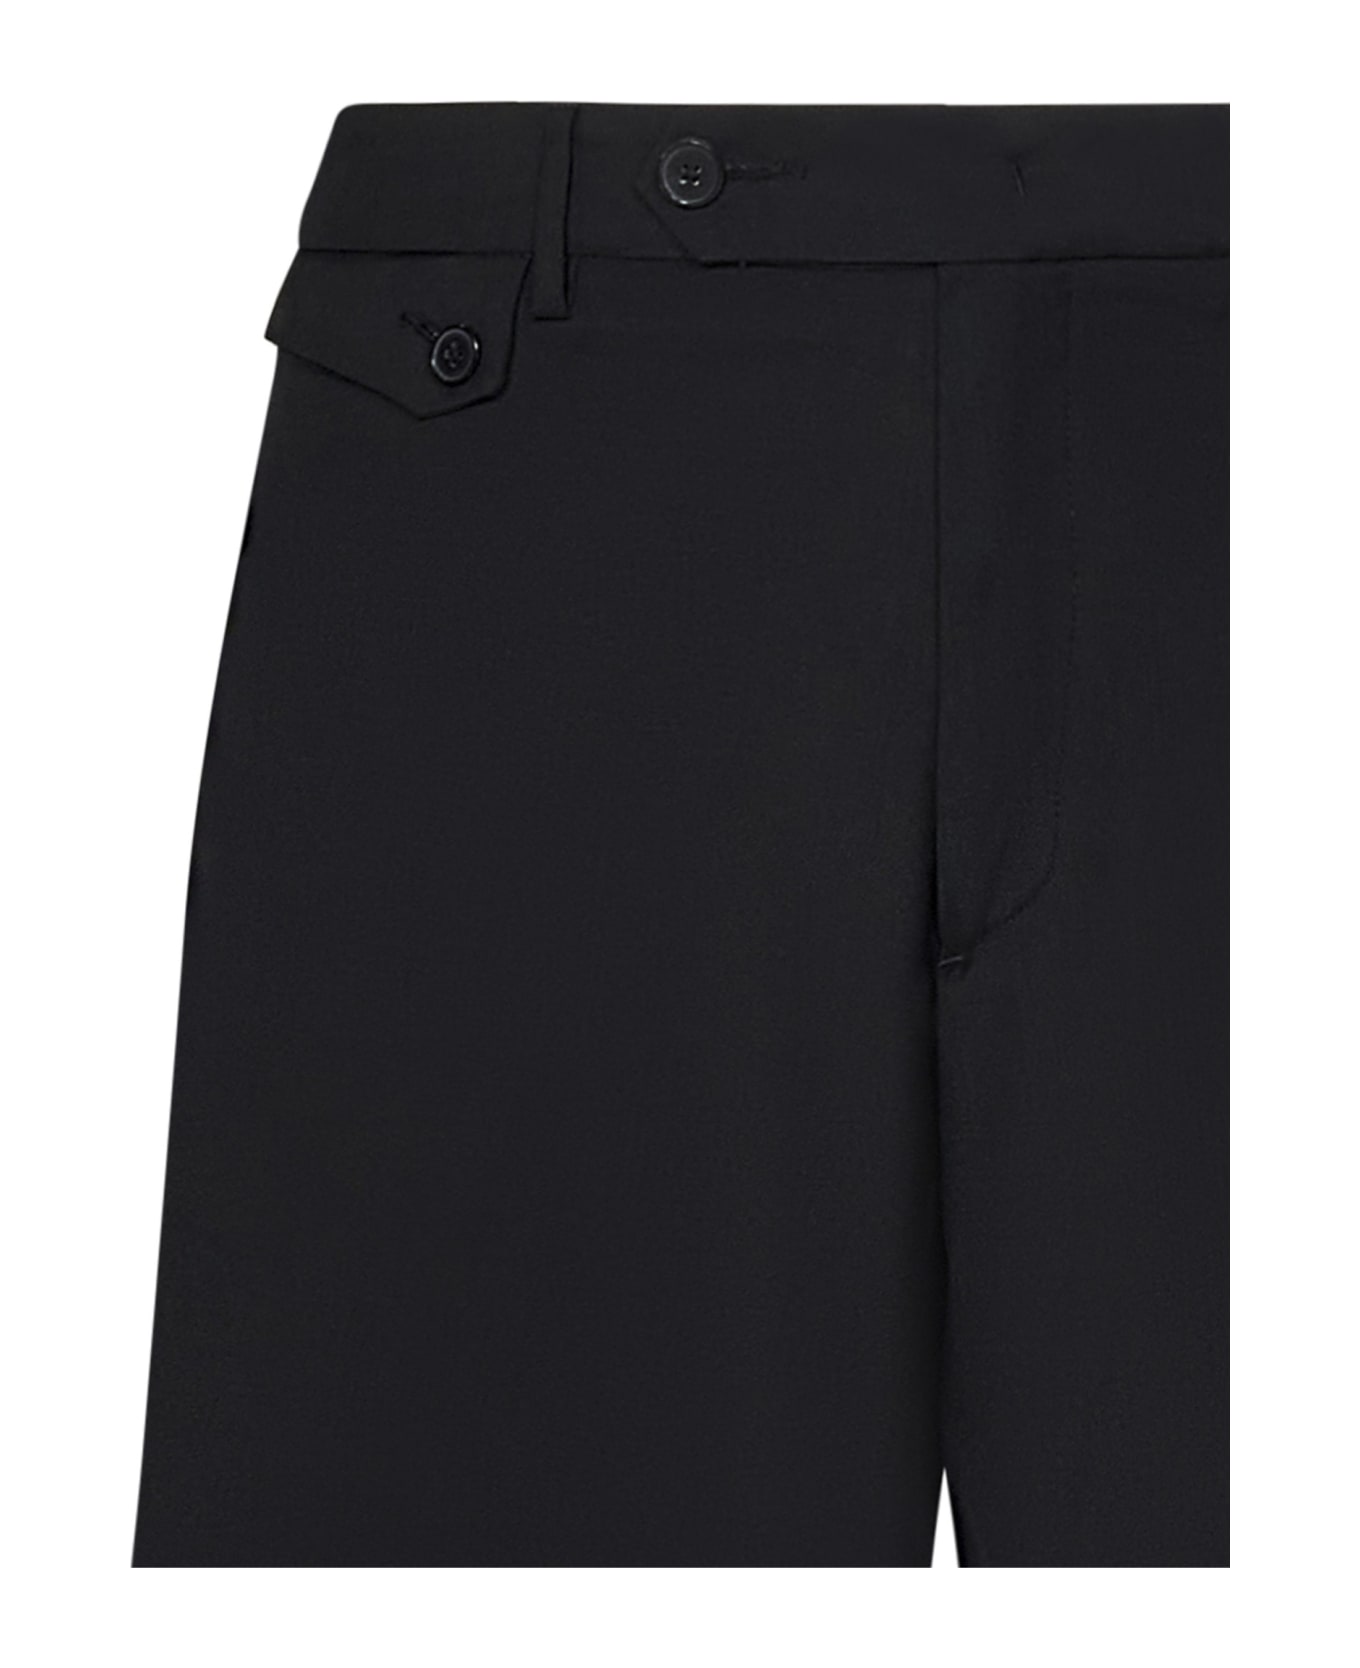 Low Brand Cooper Pocket Shorts - Black